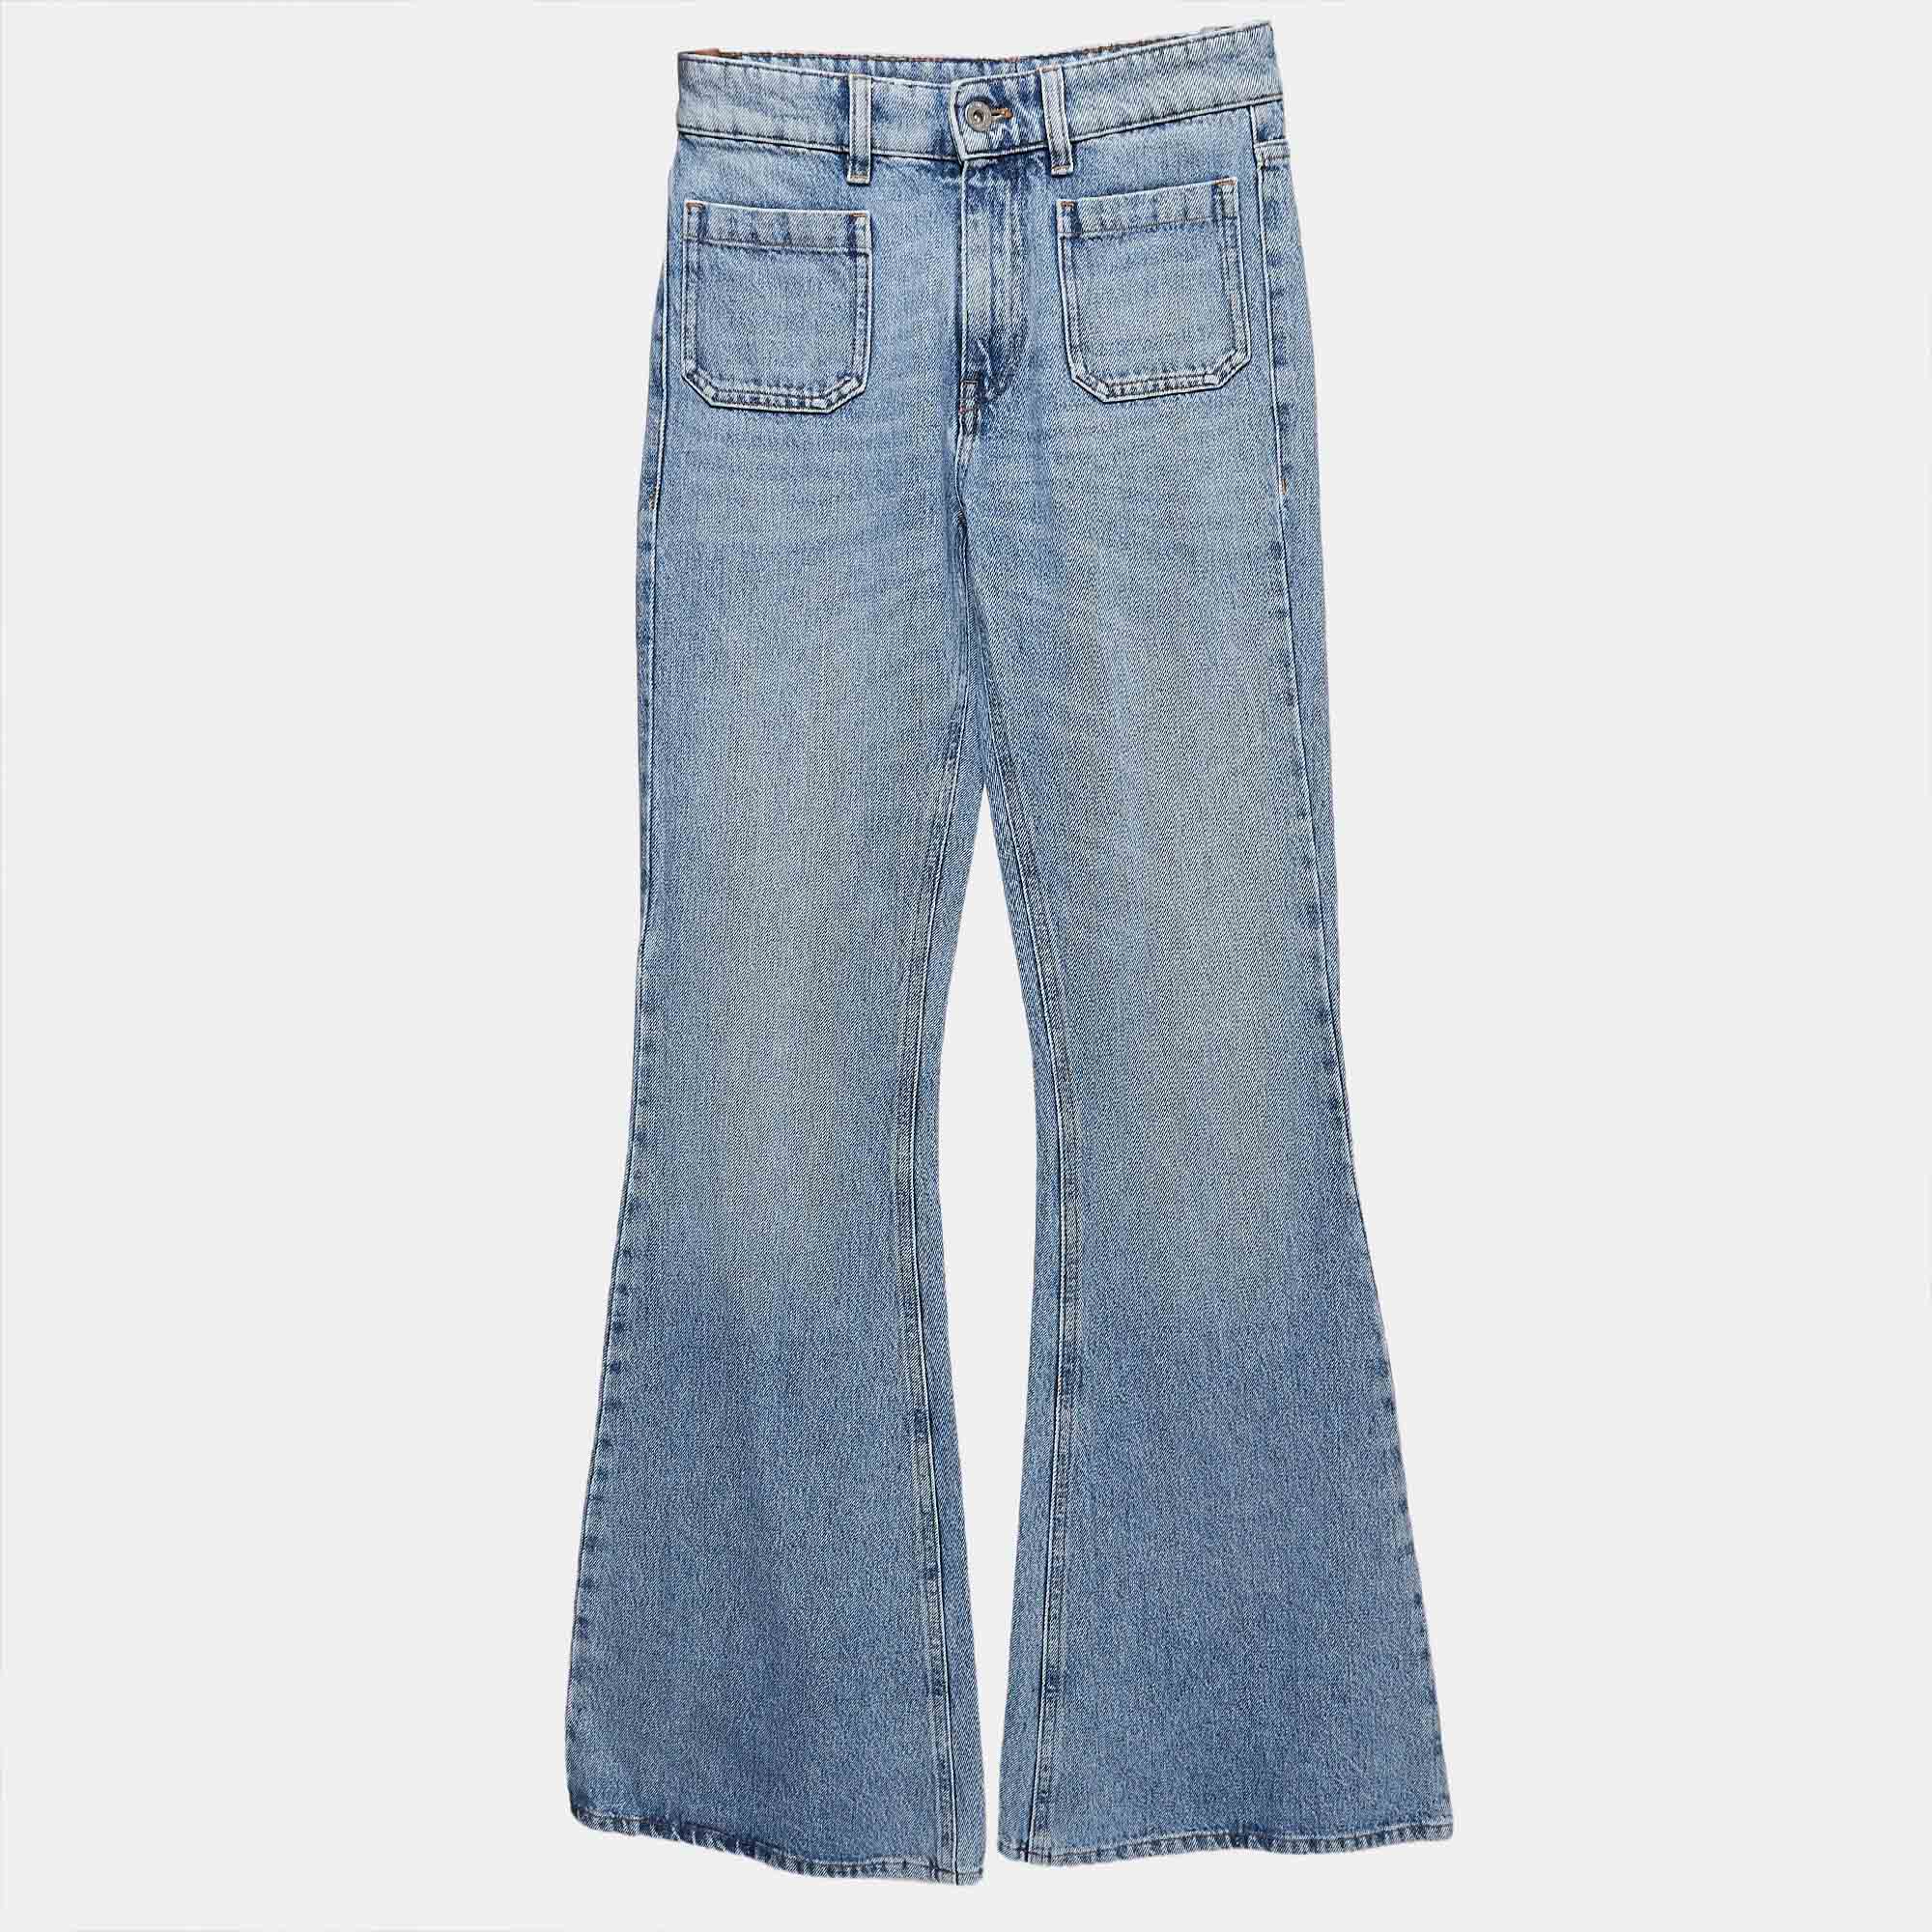 

Miu Miu Blue Washed Denim Flared Jeans  Waist 24